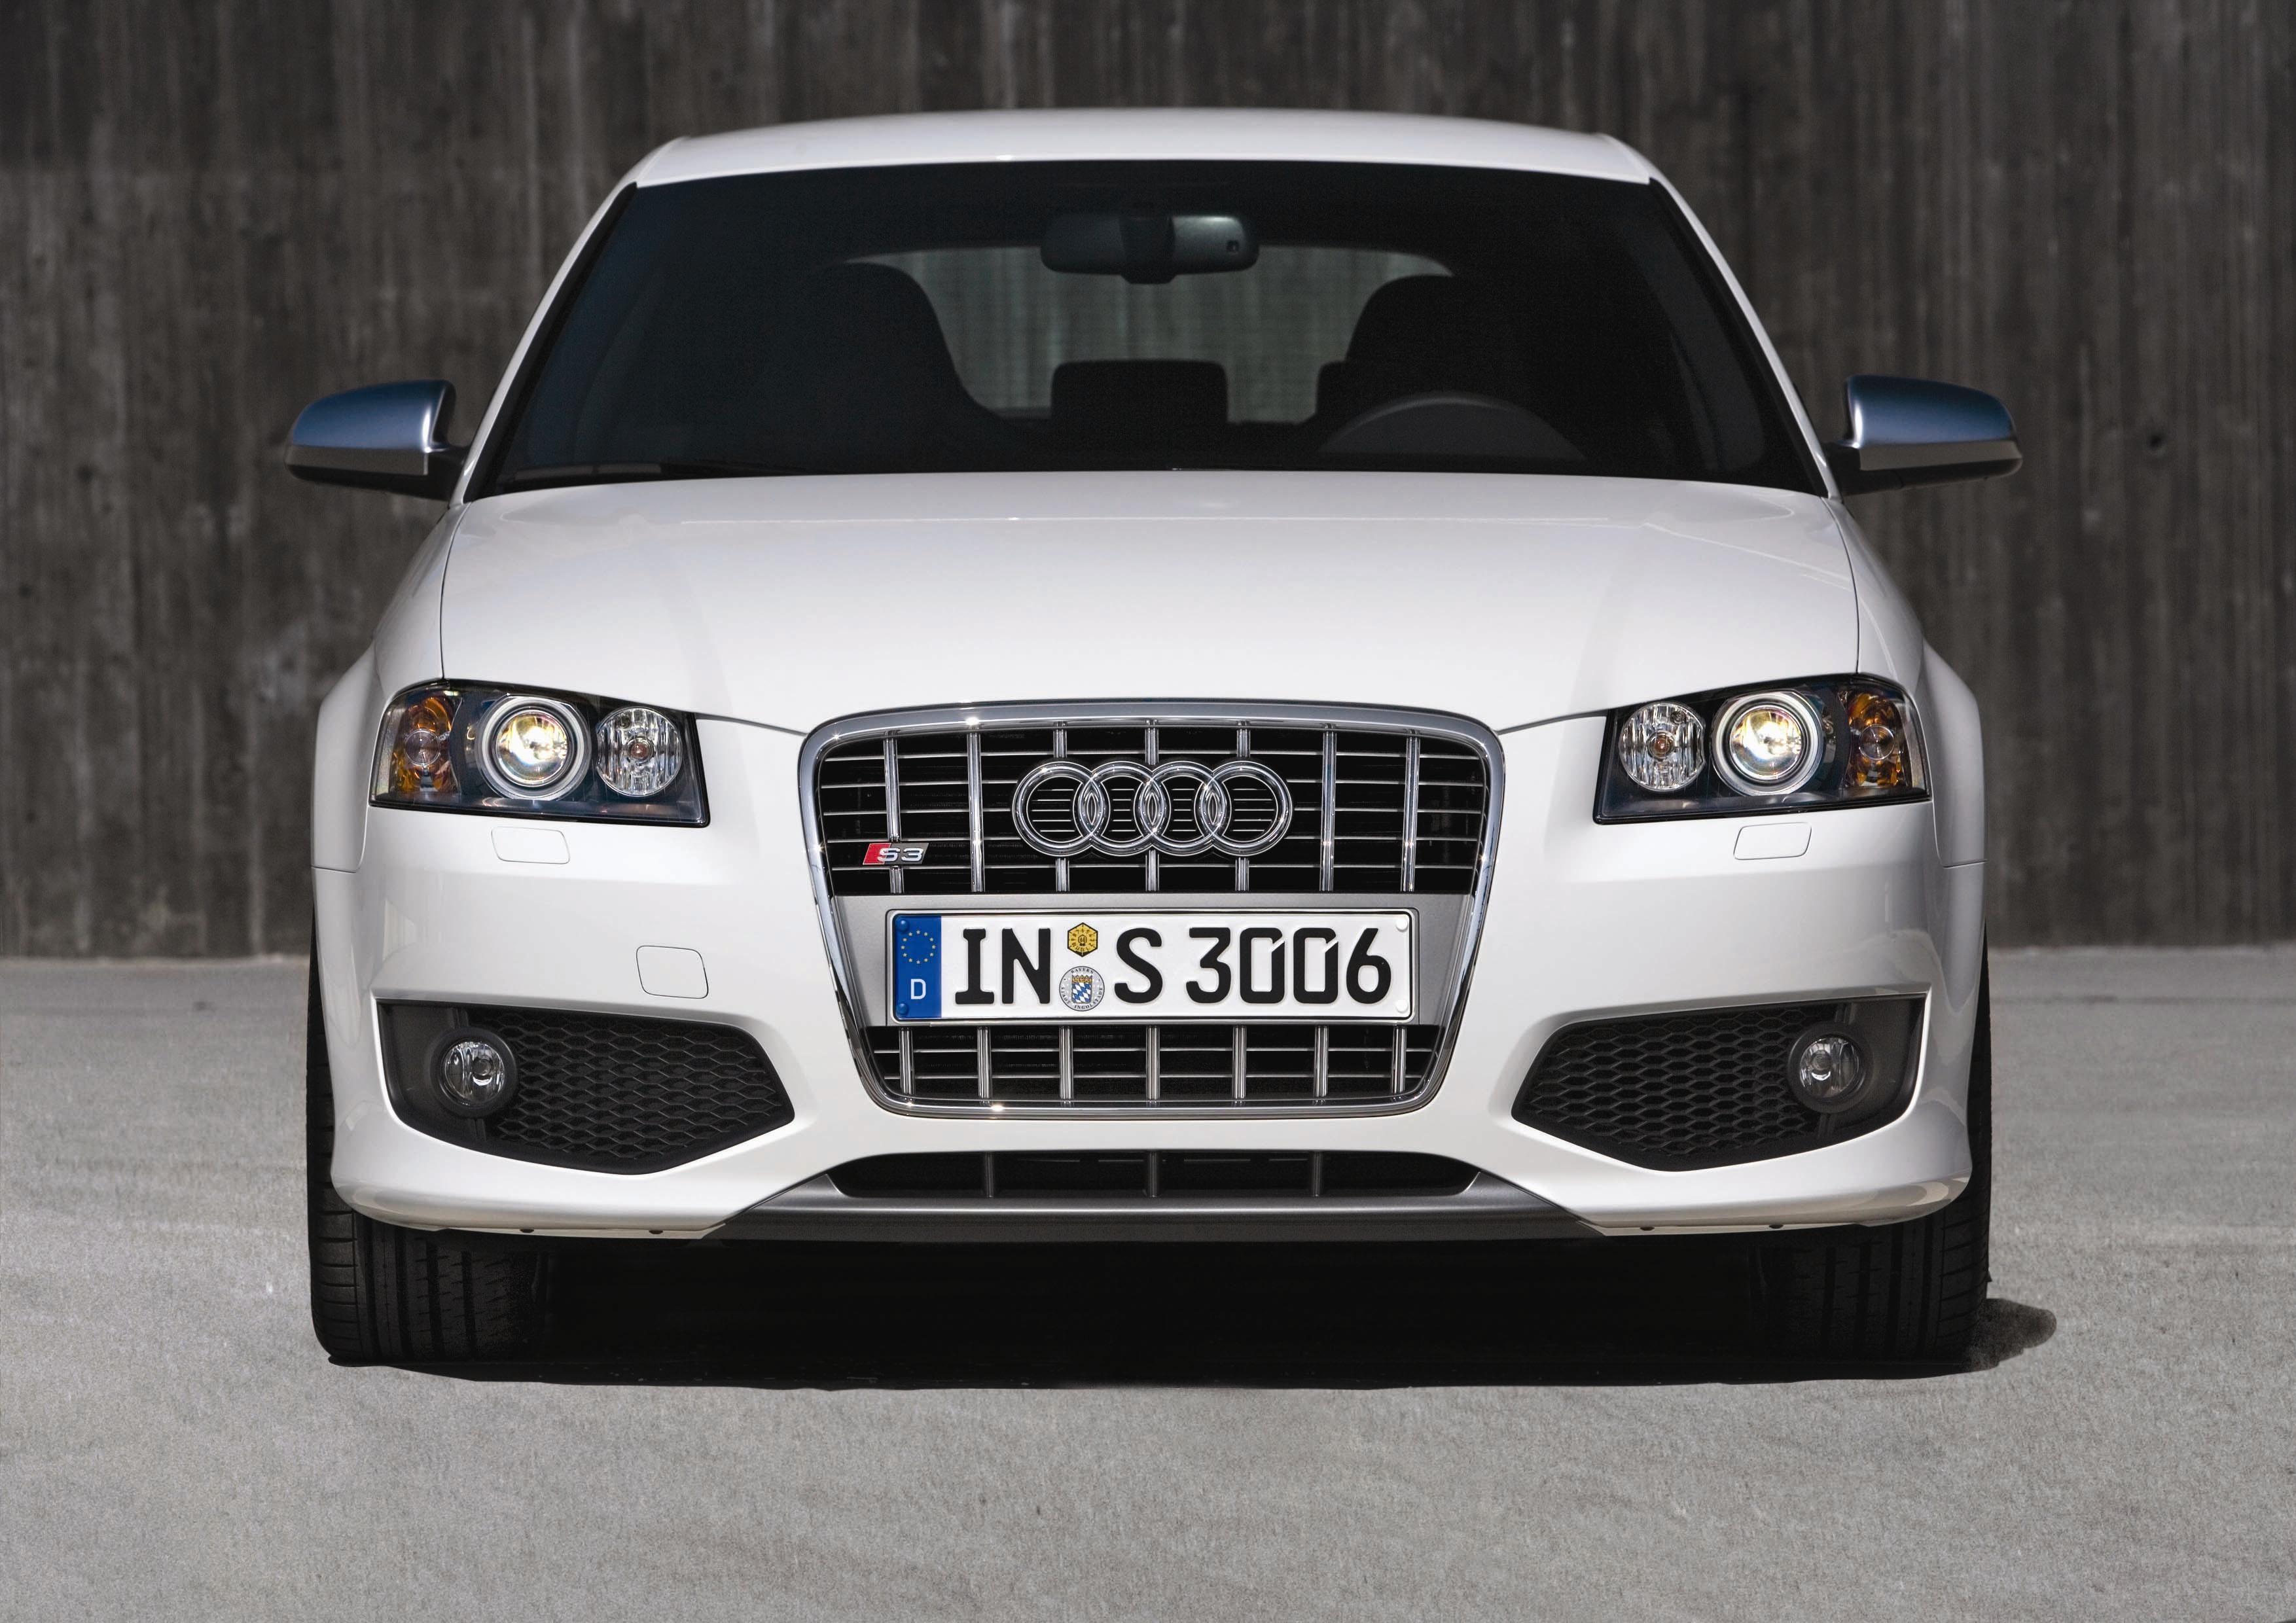 2007 Audi S3